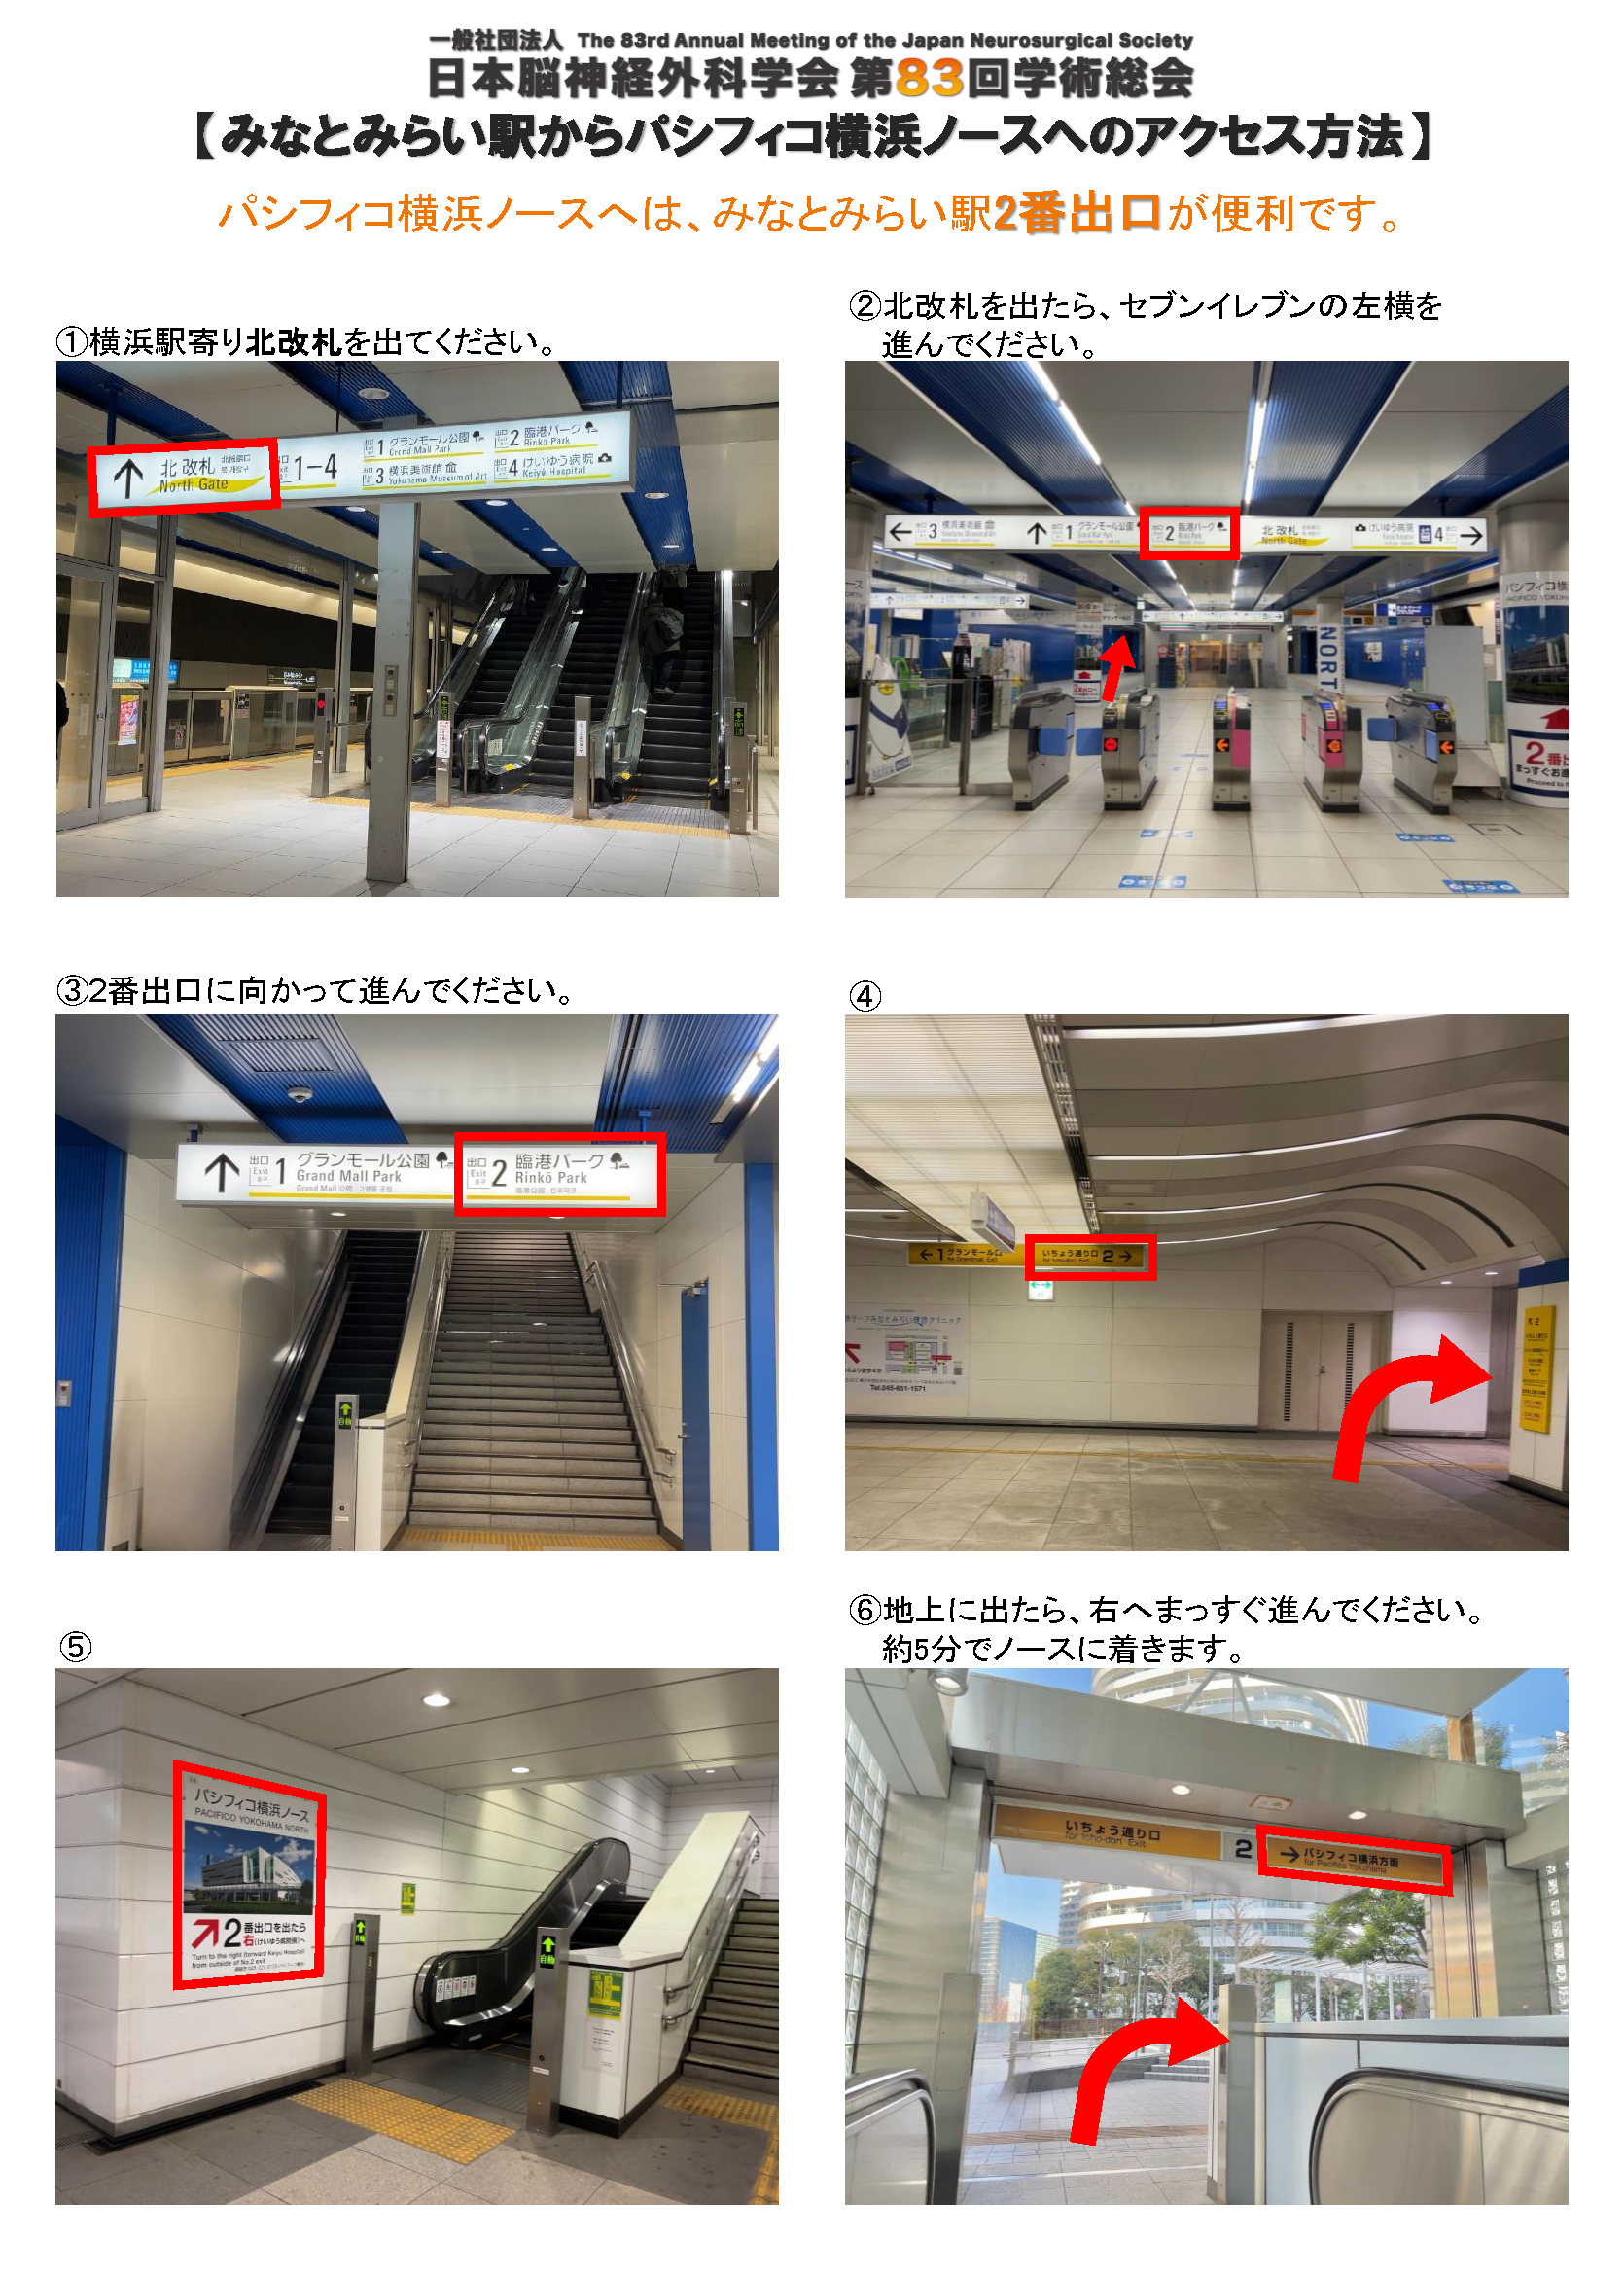 みなとみらい駅からパシフィコ横浜ノースへのアクセス方法